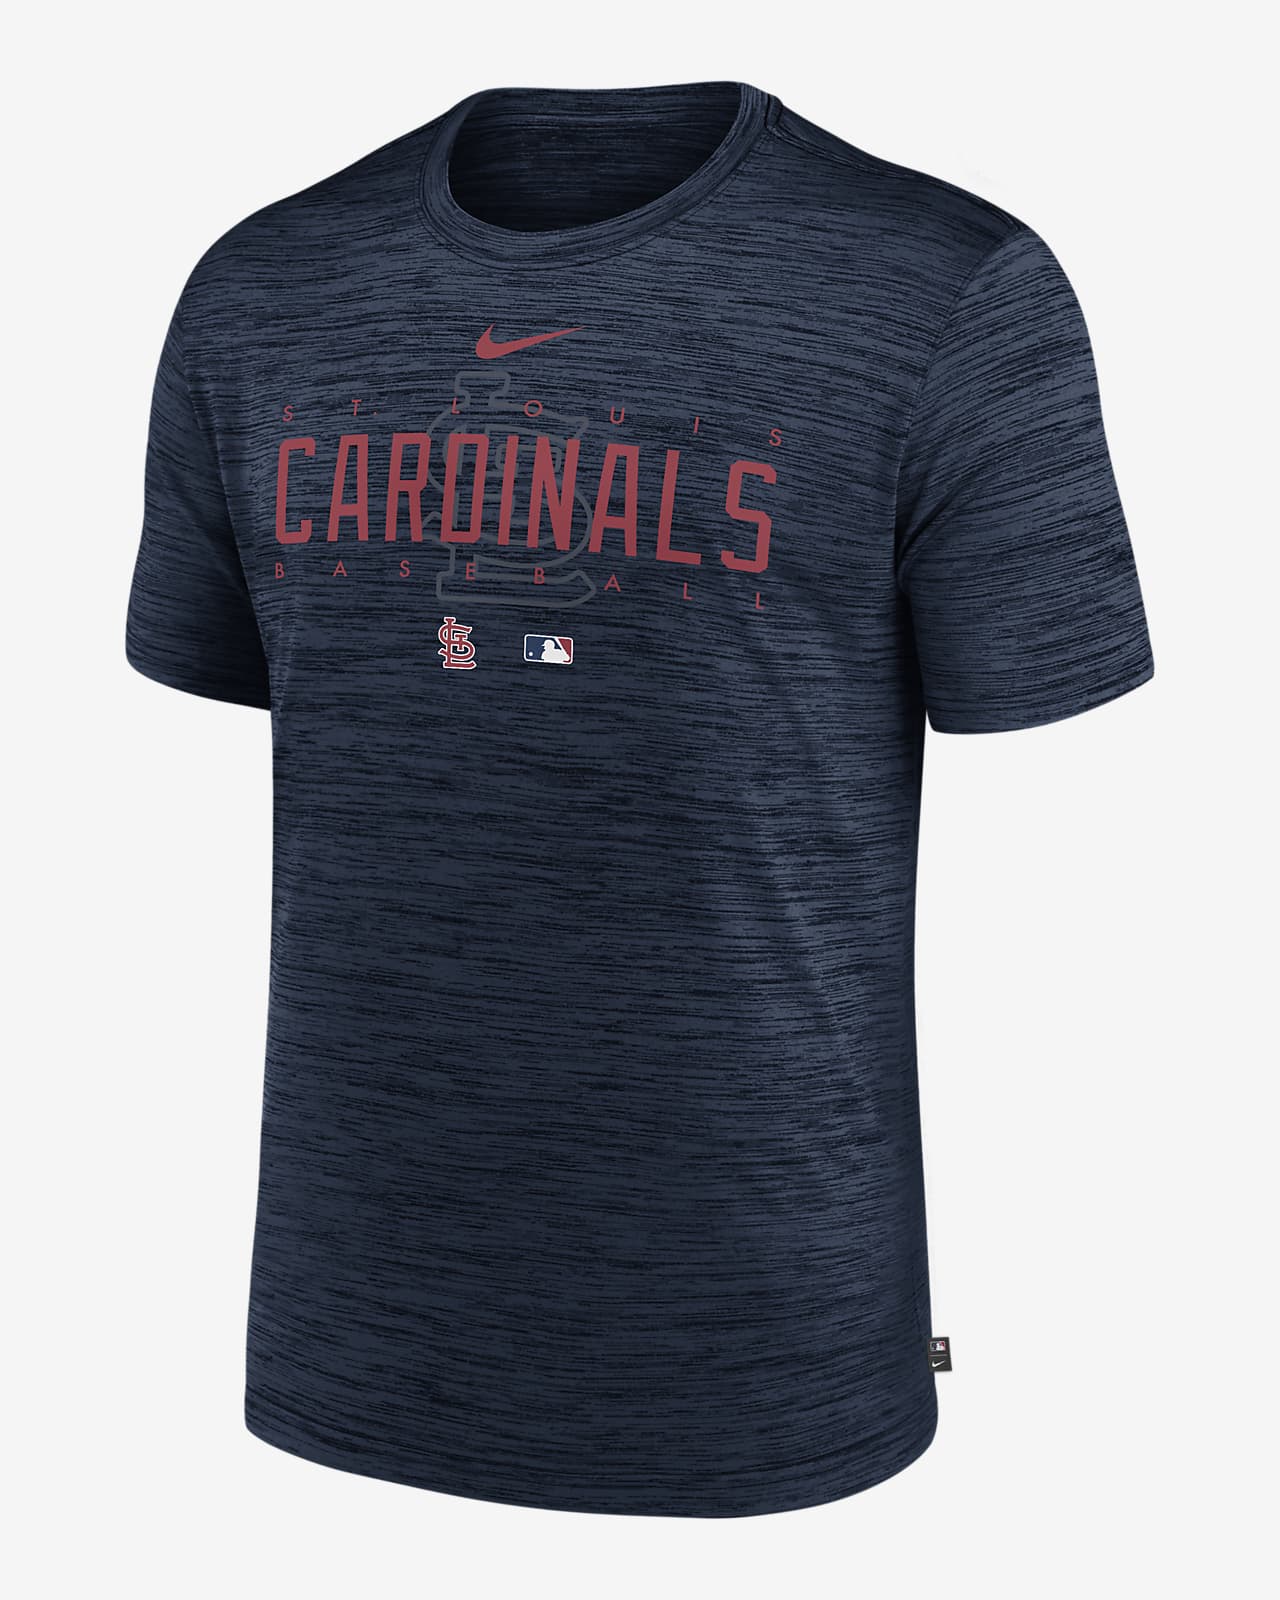 Cardinals Baseball T-Shirt | Bleached Cardinals Shirt | St. Louis Cardinals  | Leopard T-Shirt | Cardinals Graphic T-Shirt